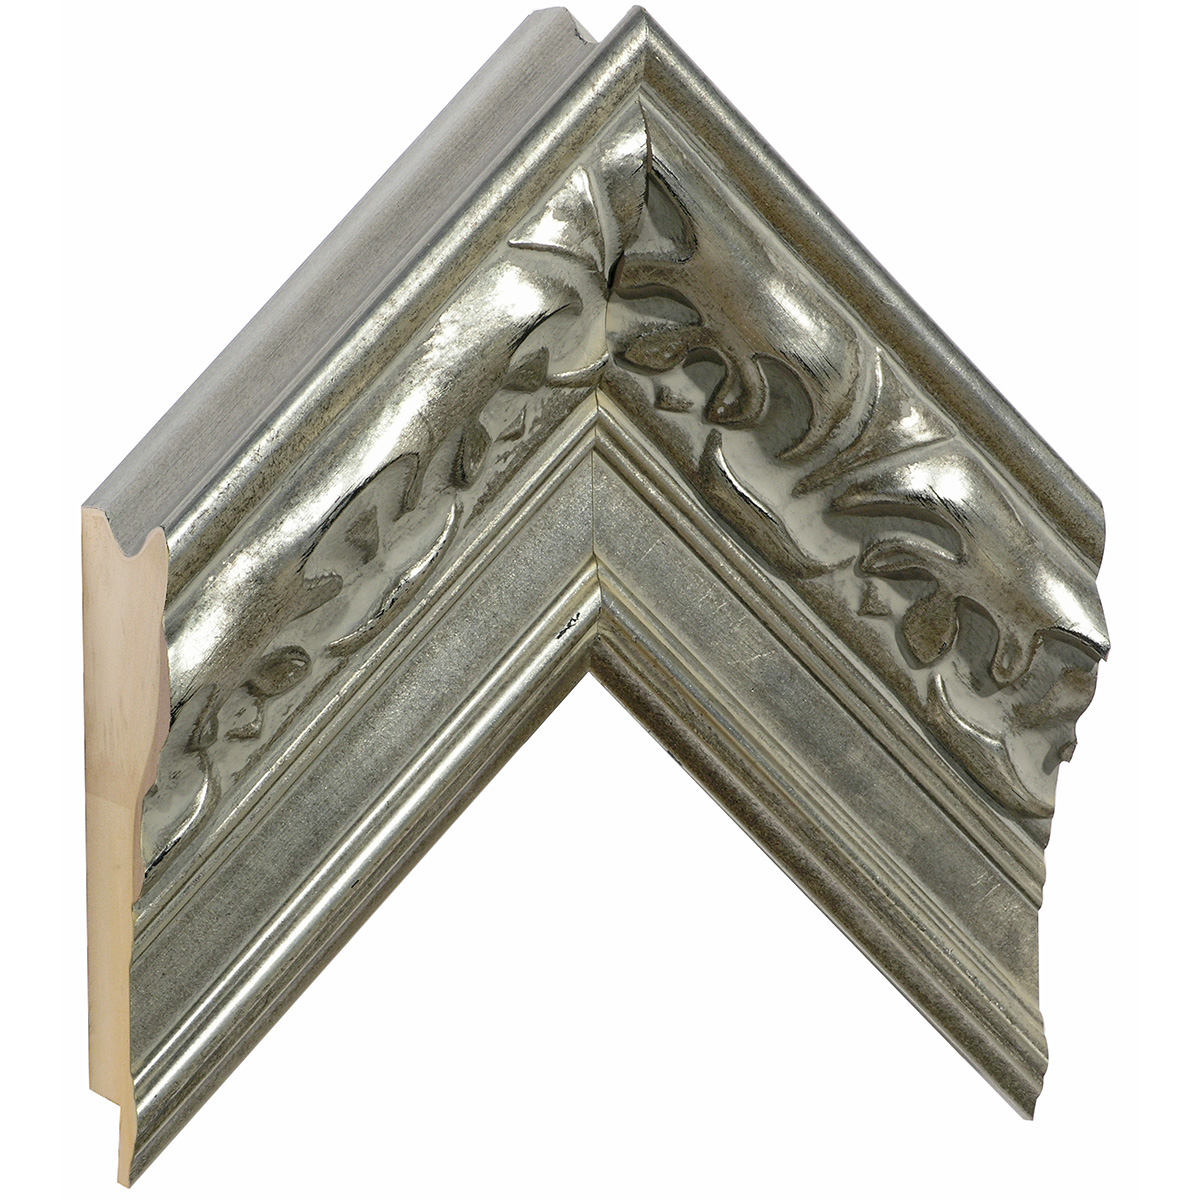 Letvica jelutong šir.102 mm vis.71 - srebro sa dekoracijama - Uzorak